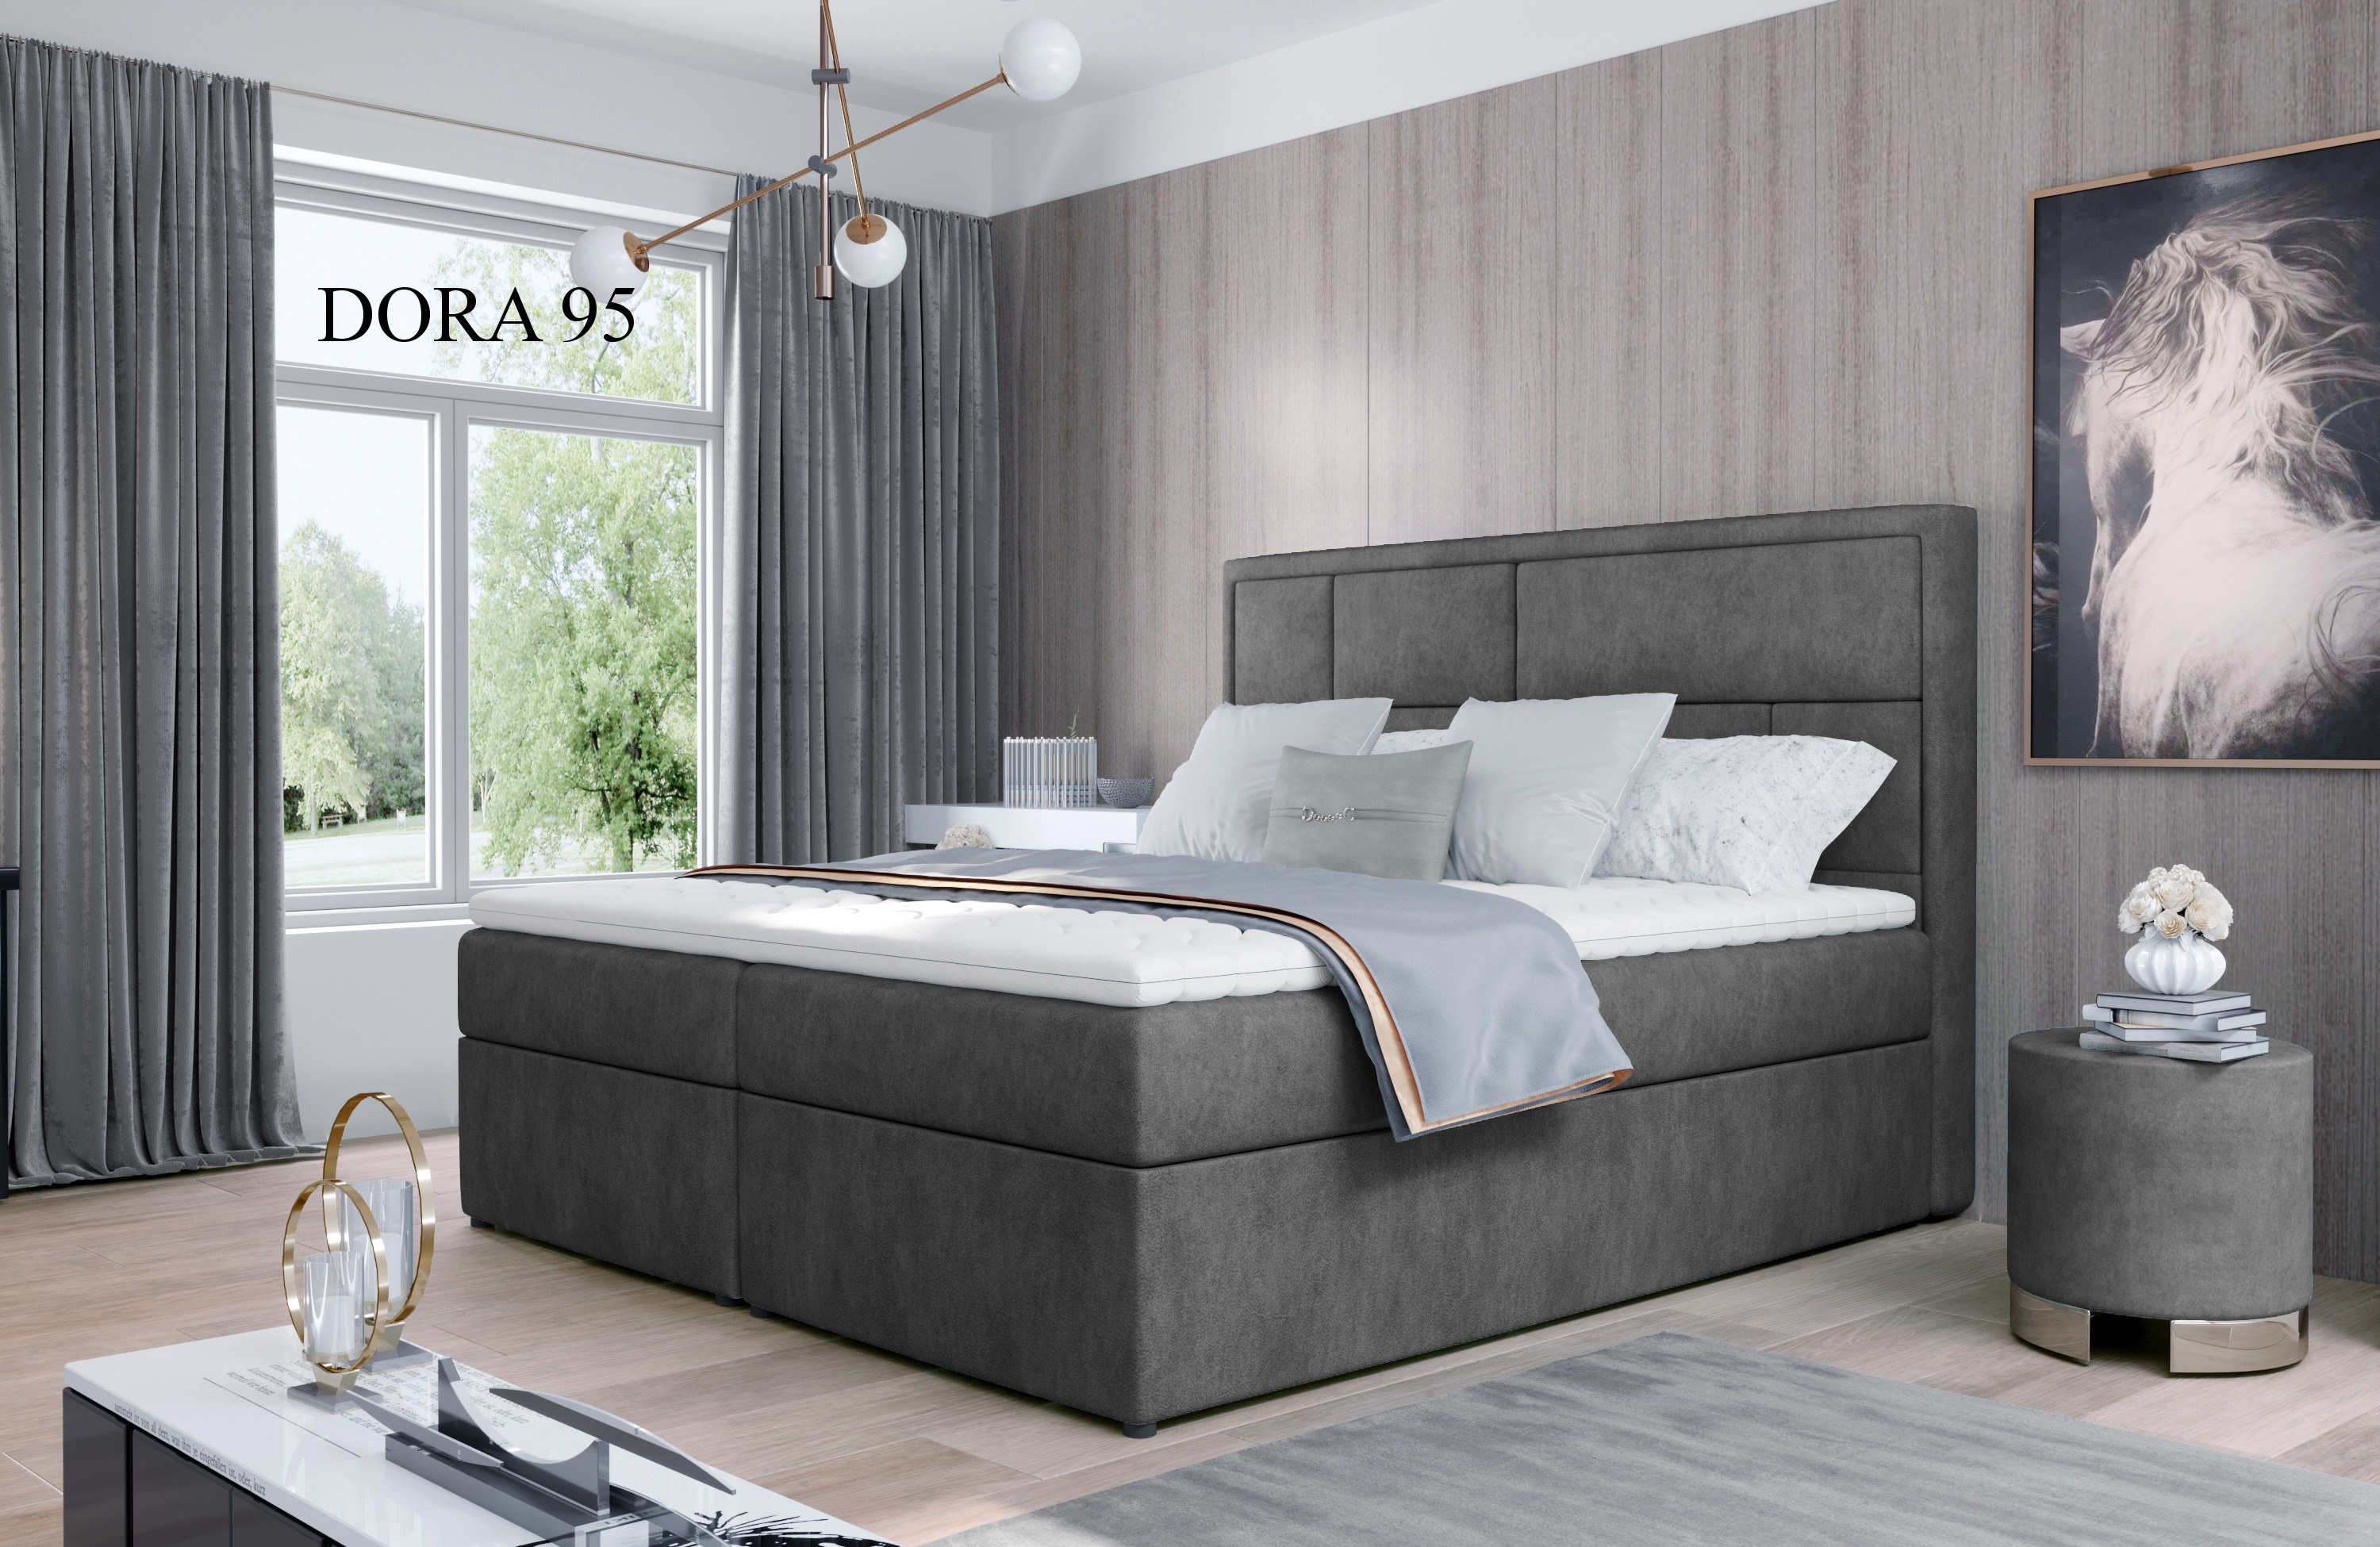 Čalouněná postel MERON Boxsprings 160 x 200 cm Provedení: Dora 95